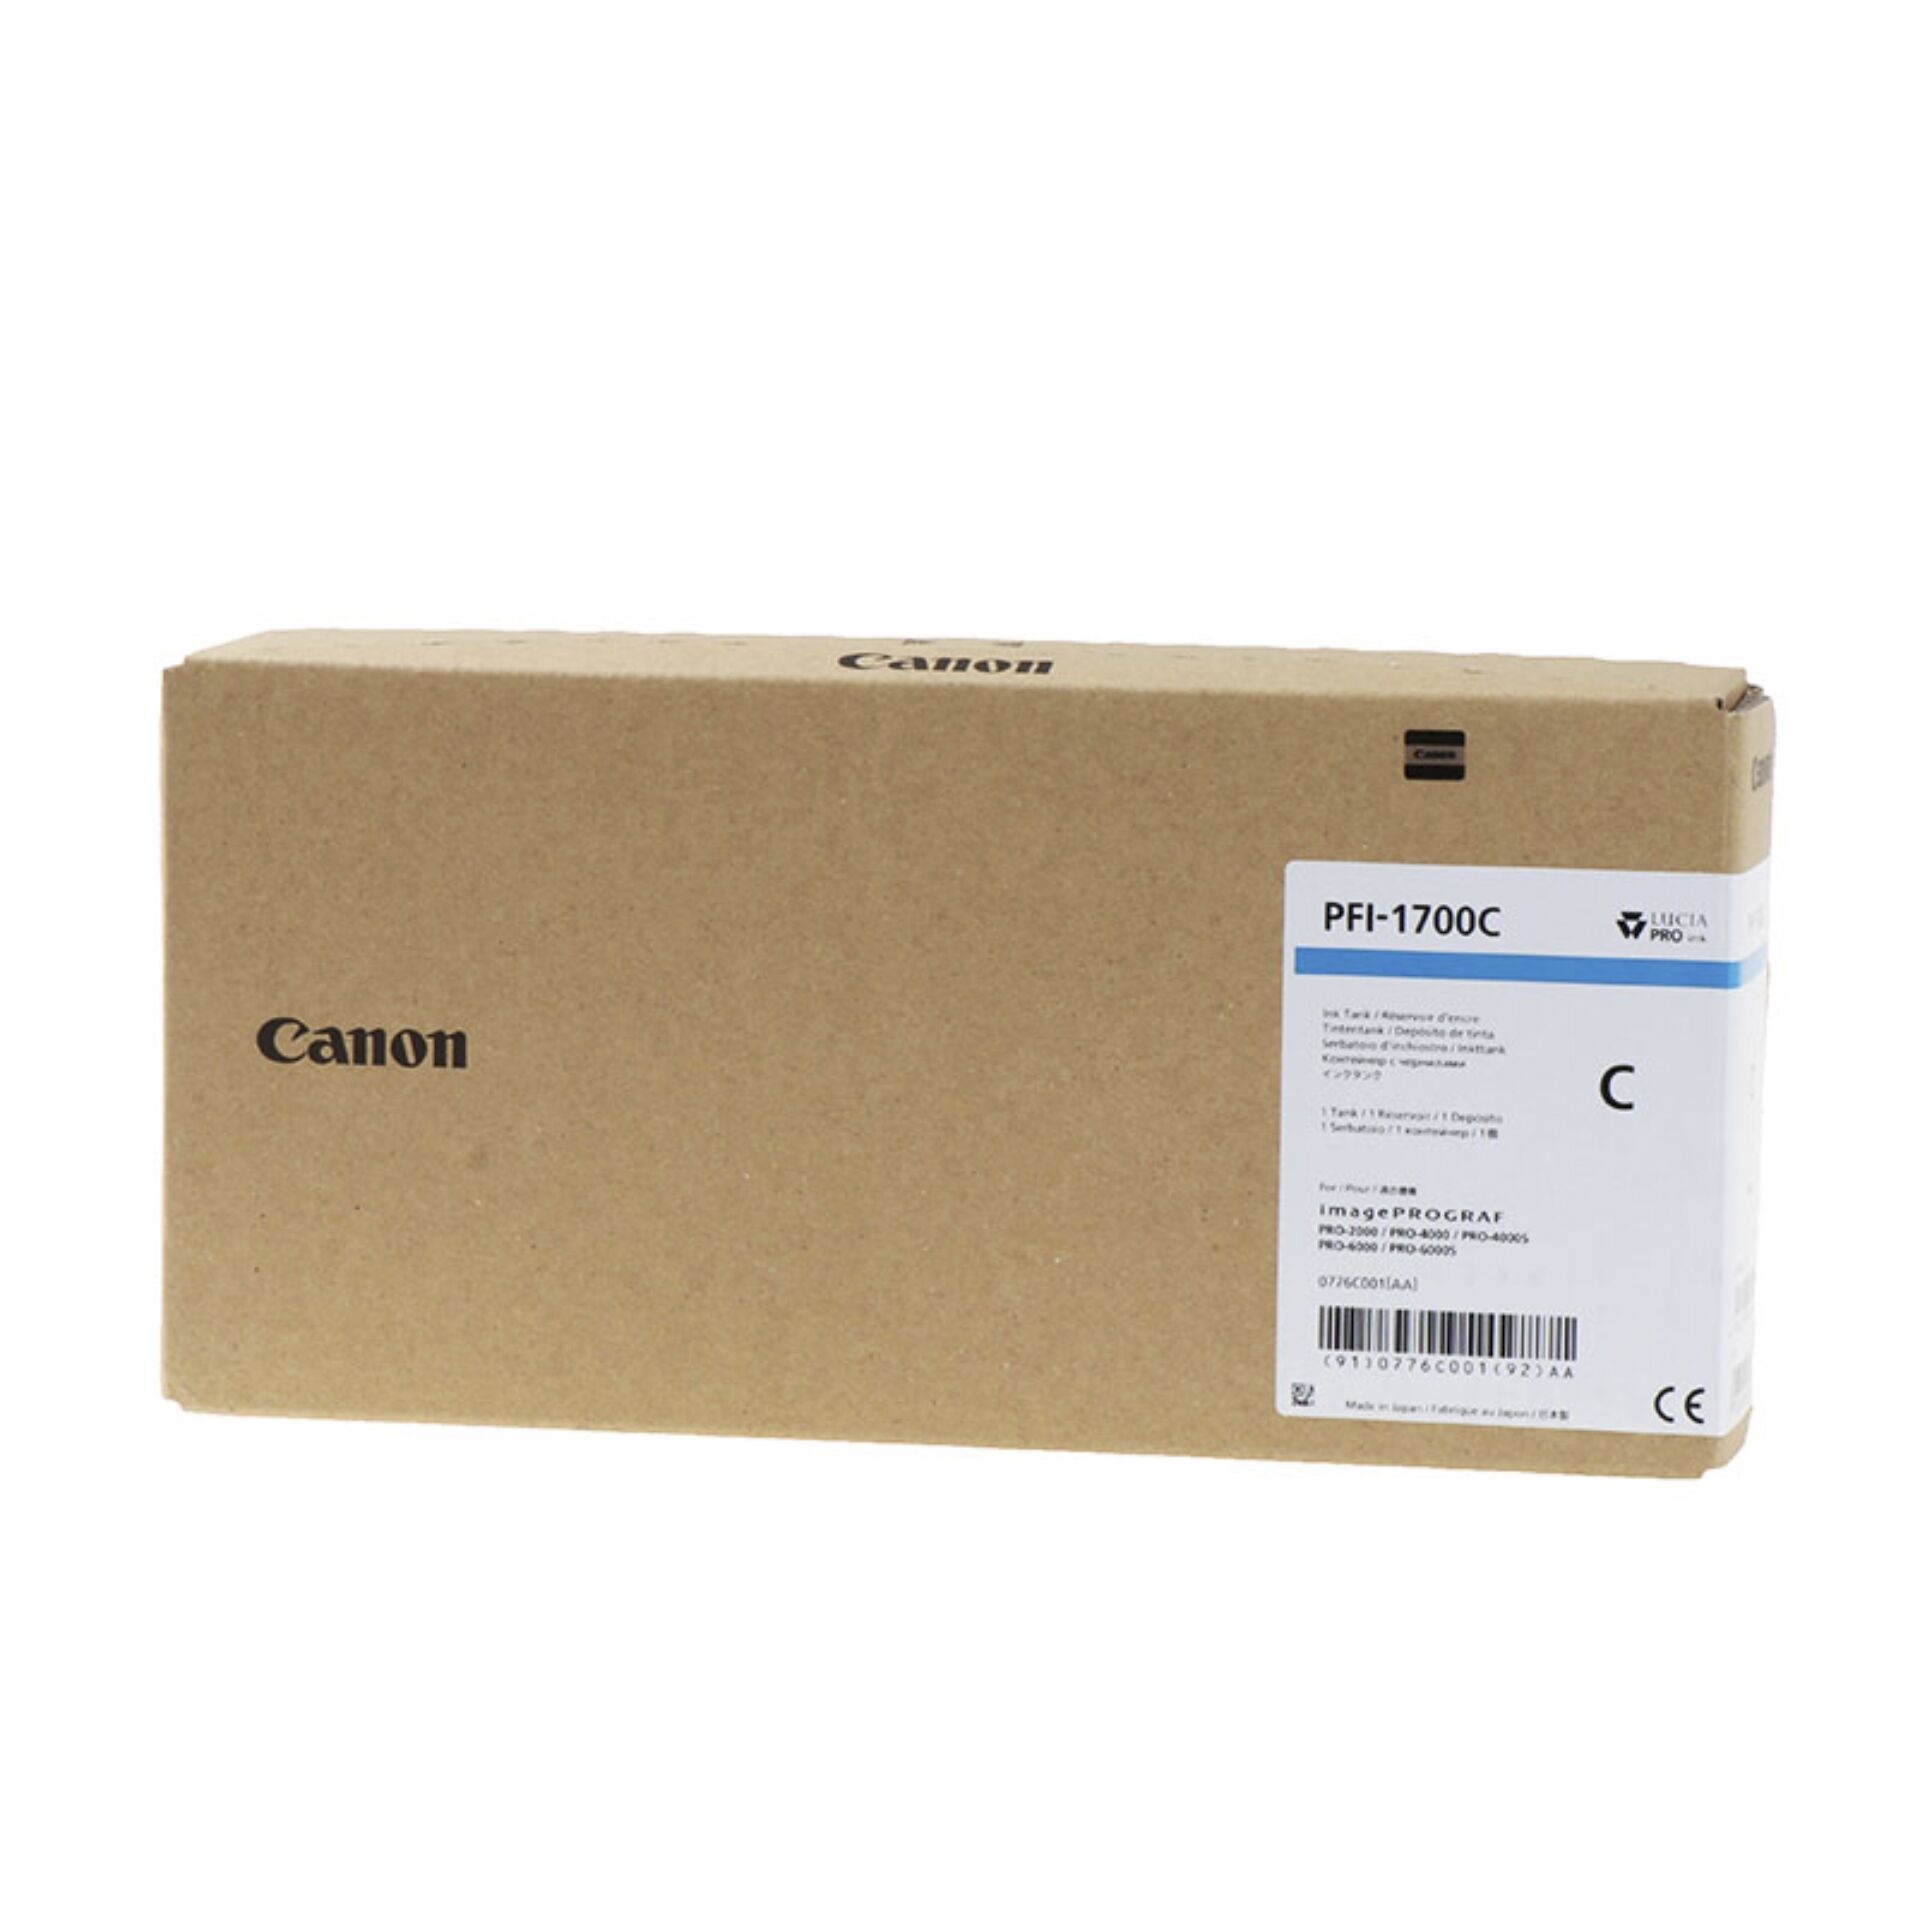 Canon PFI-1700 Tinte cyan 700 ml